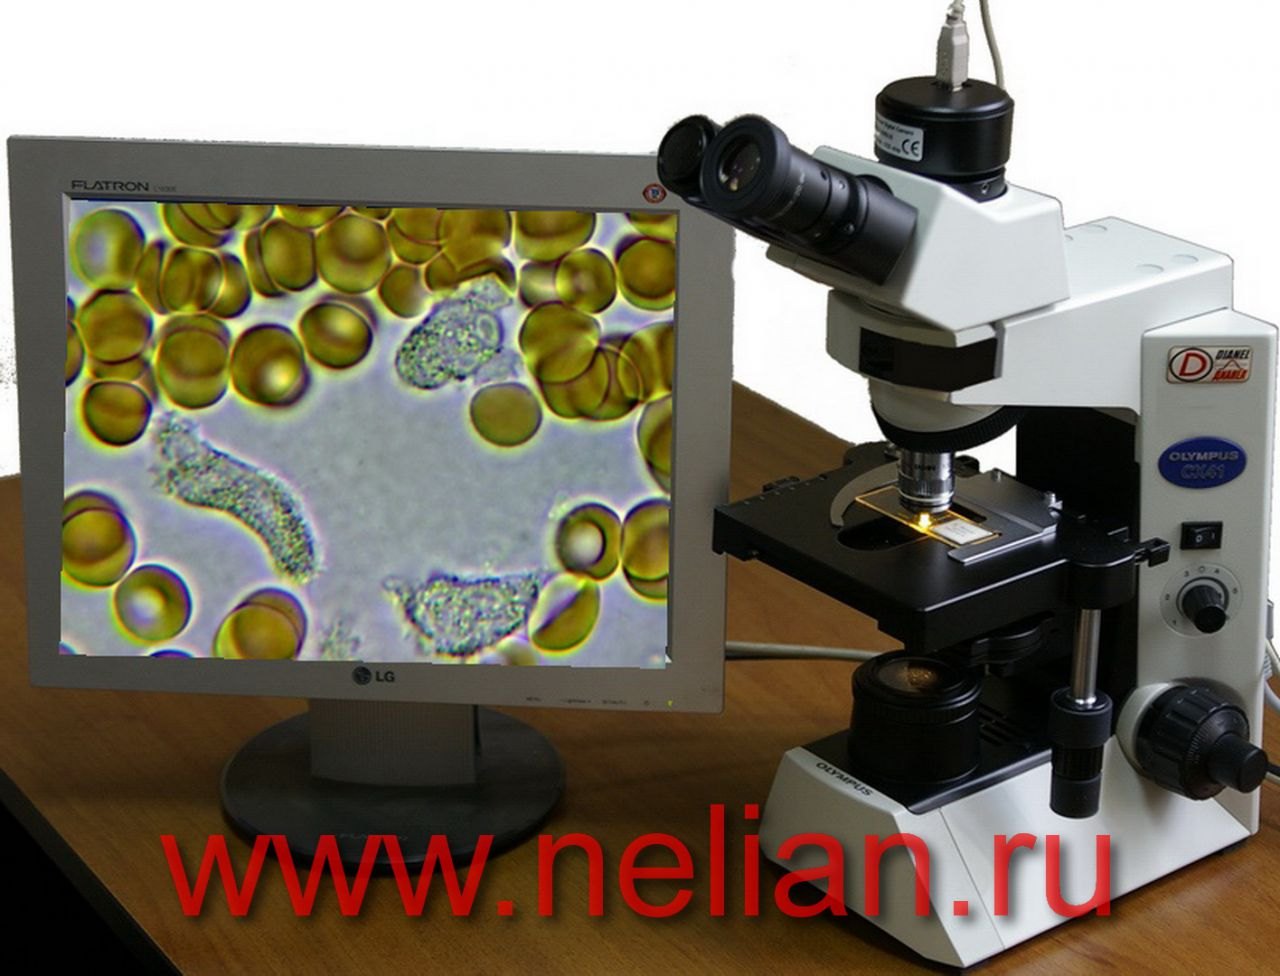 Поле микроскопа. Микроскоп Олимпус СХ 41. Микроскоп Olympus cx41. Темнопольный микроскоп. Микроскоп цифровой биологический лабораторный 1мп.